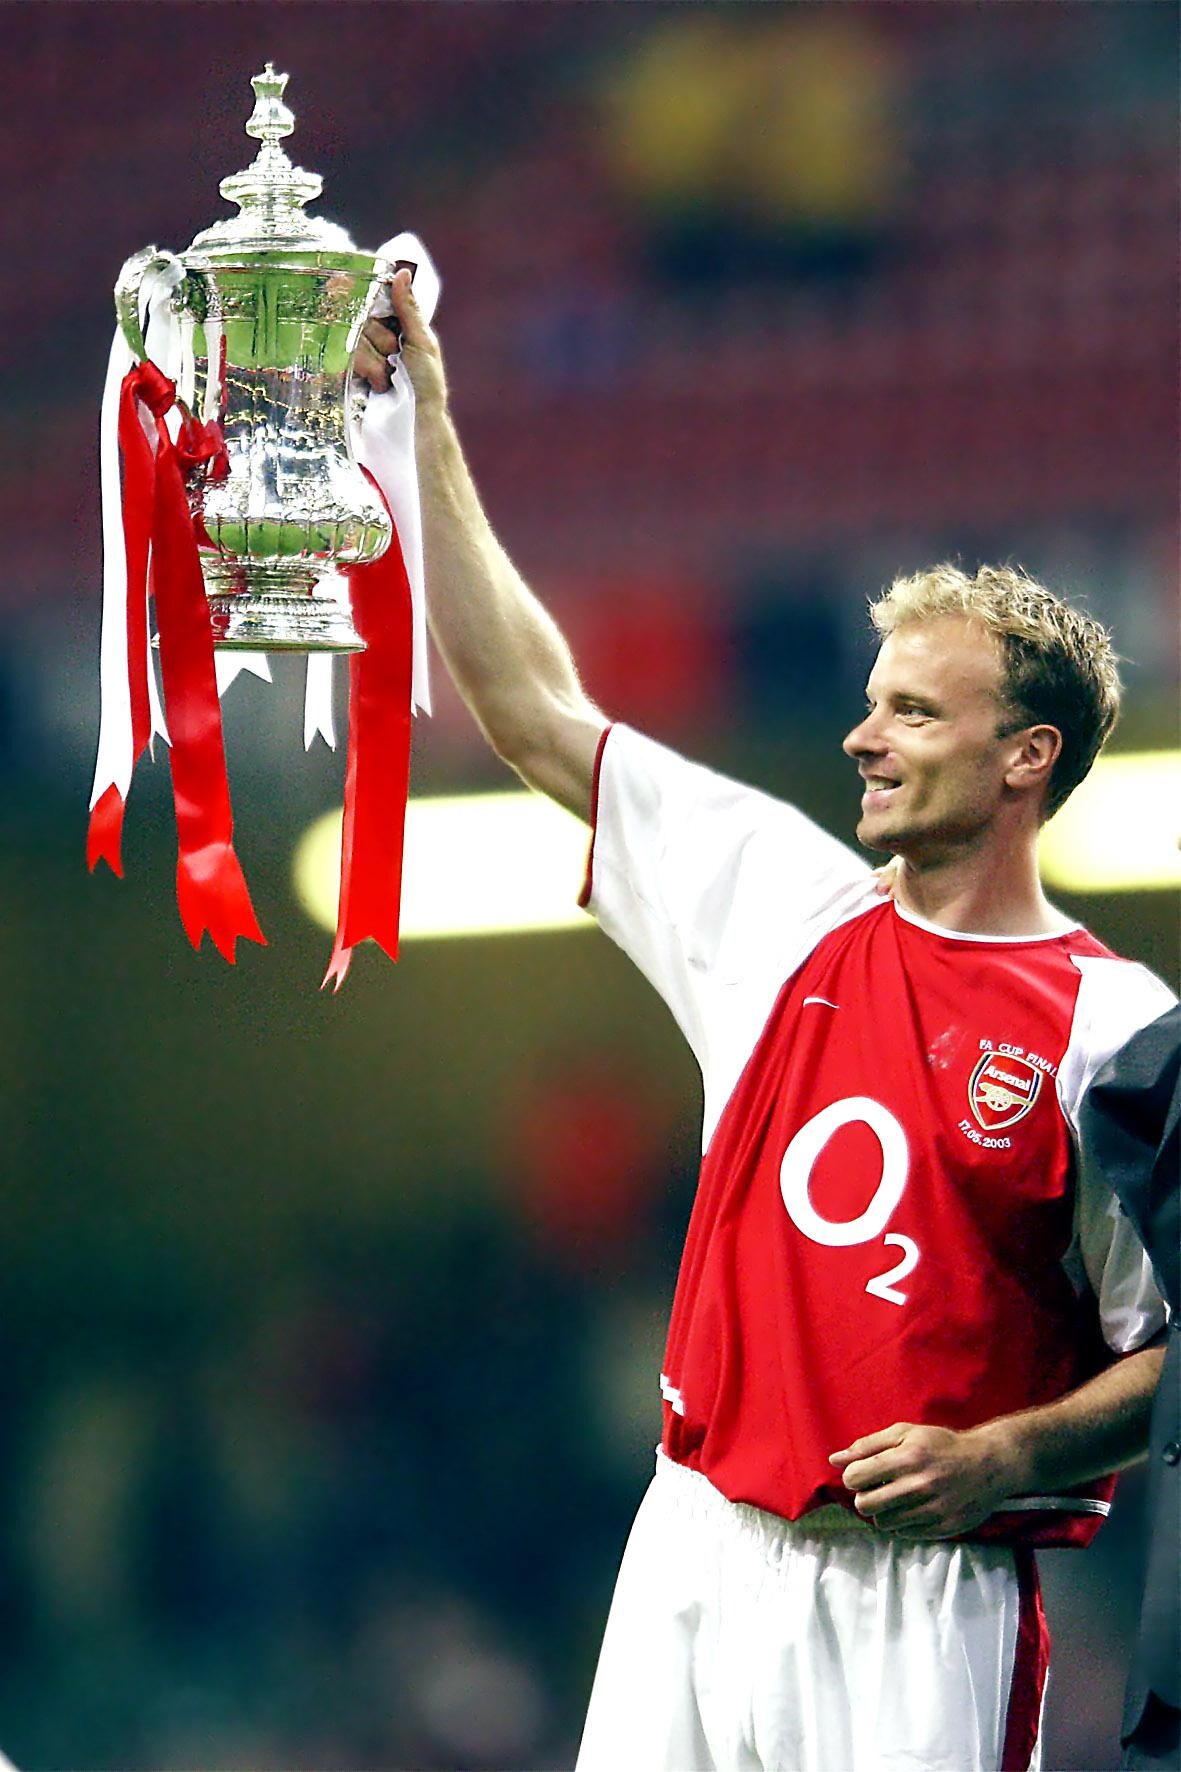 Kunststukje Bergkamp verkozen tot mooiste goal ooit in Premier League